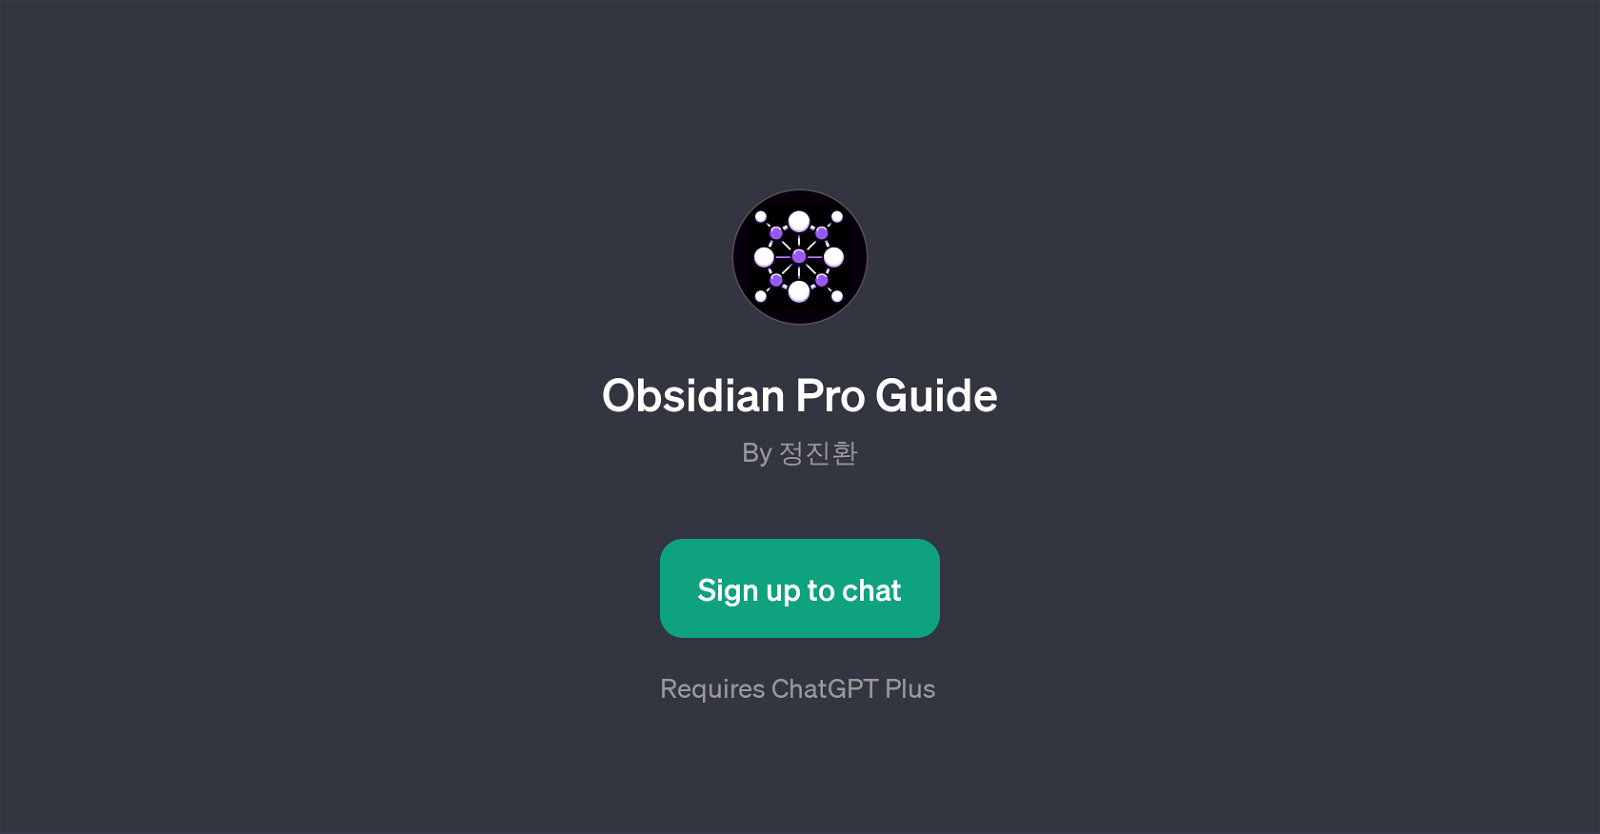 Obsidian Pro Guide website